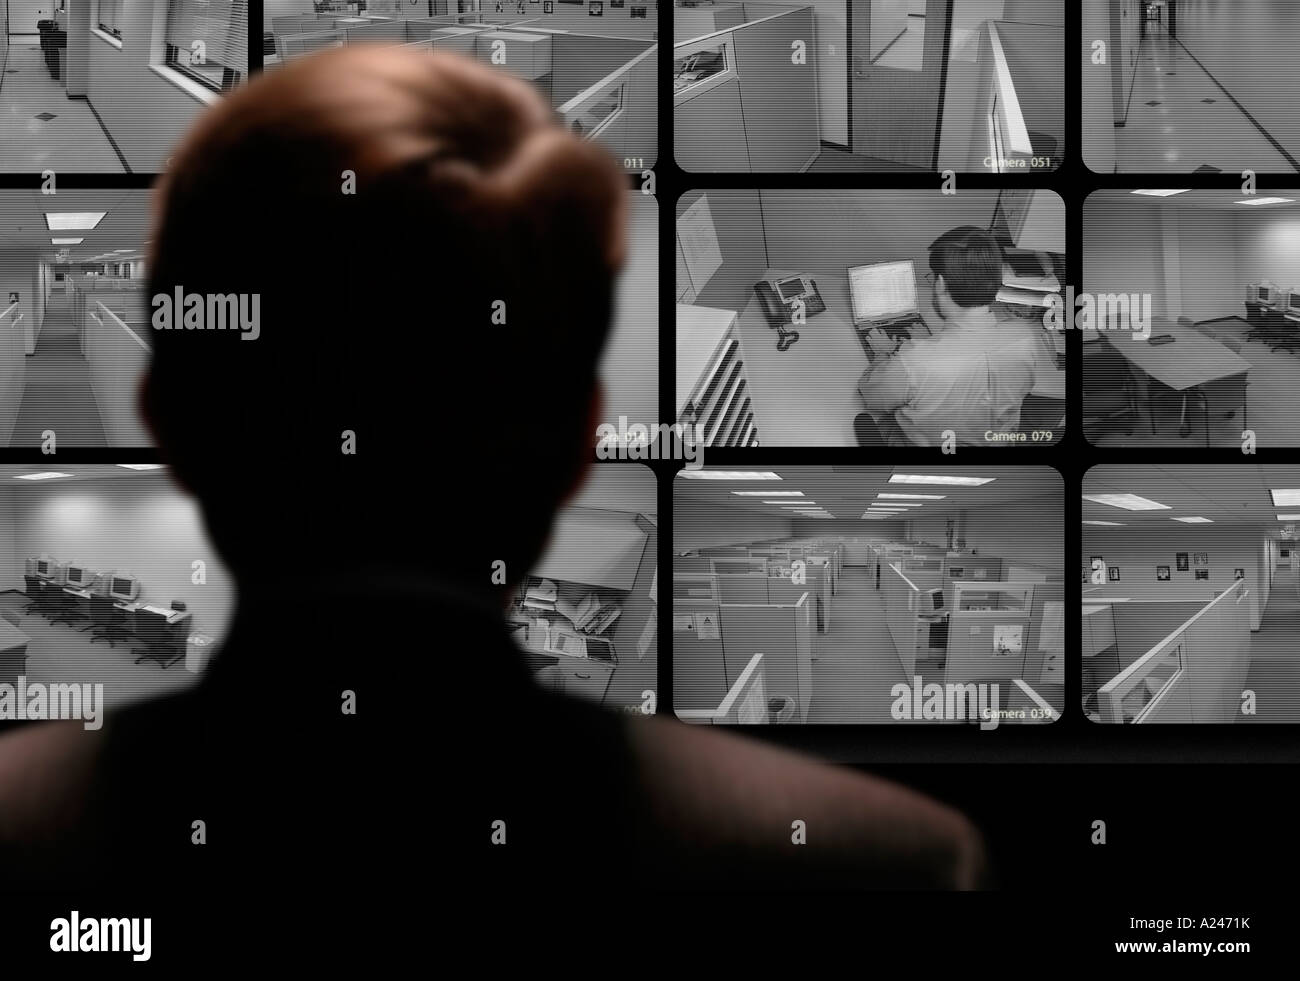 Hombre mirando el trabajo de un empleado a través de un monitor de vídeo de circuito cerrado Foto de stock